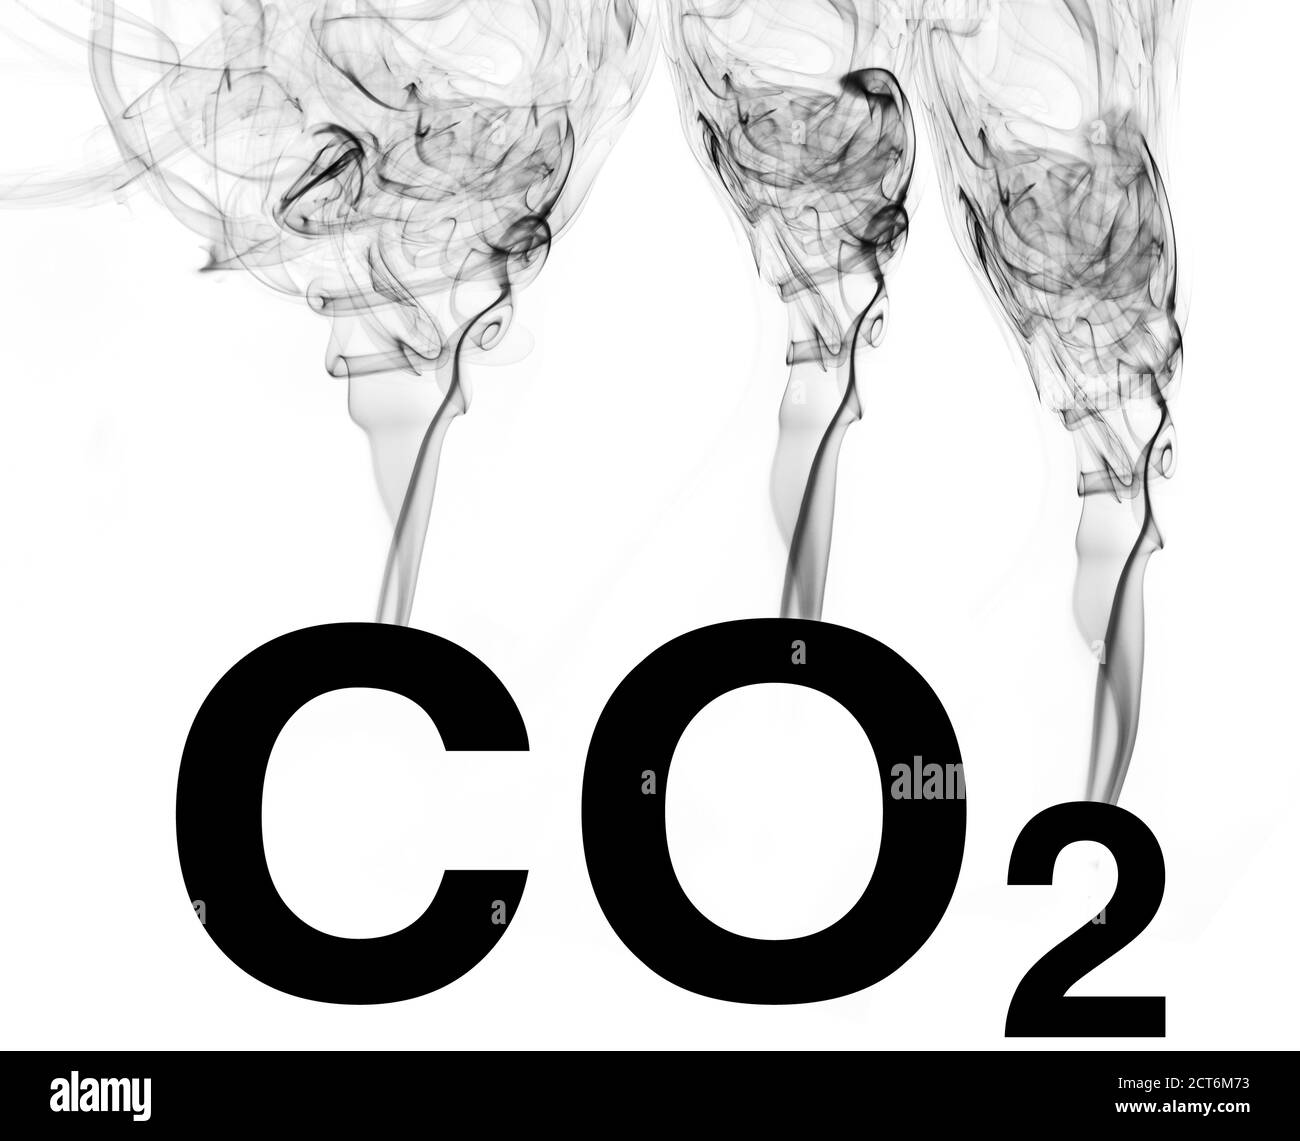 CO2 que emerge de su símbolo químico. Foto de stock